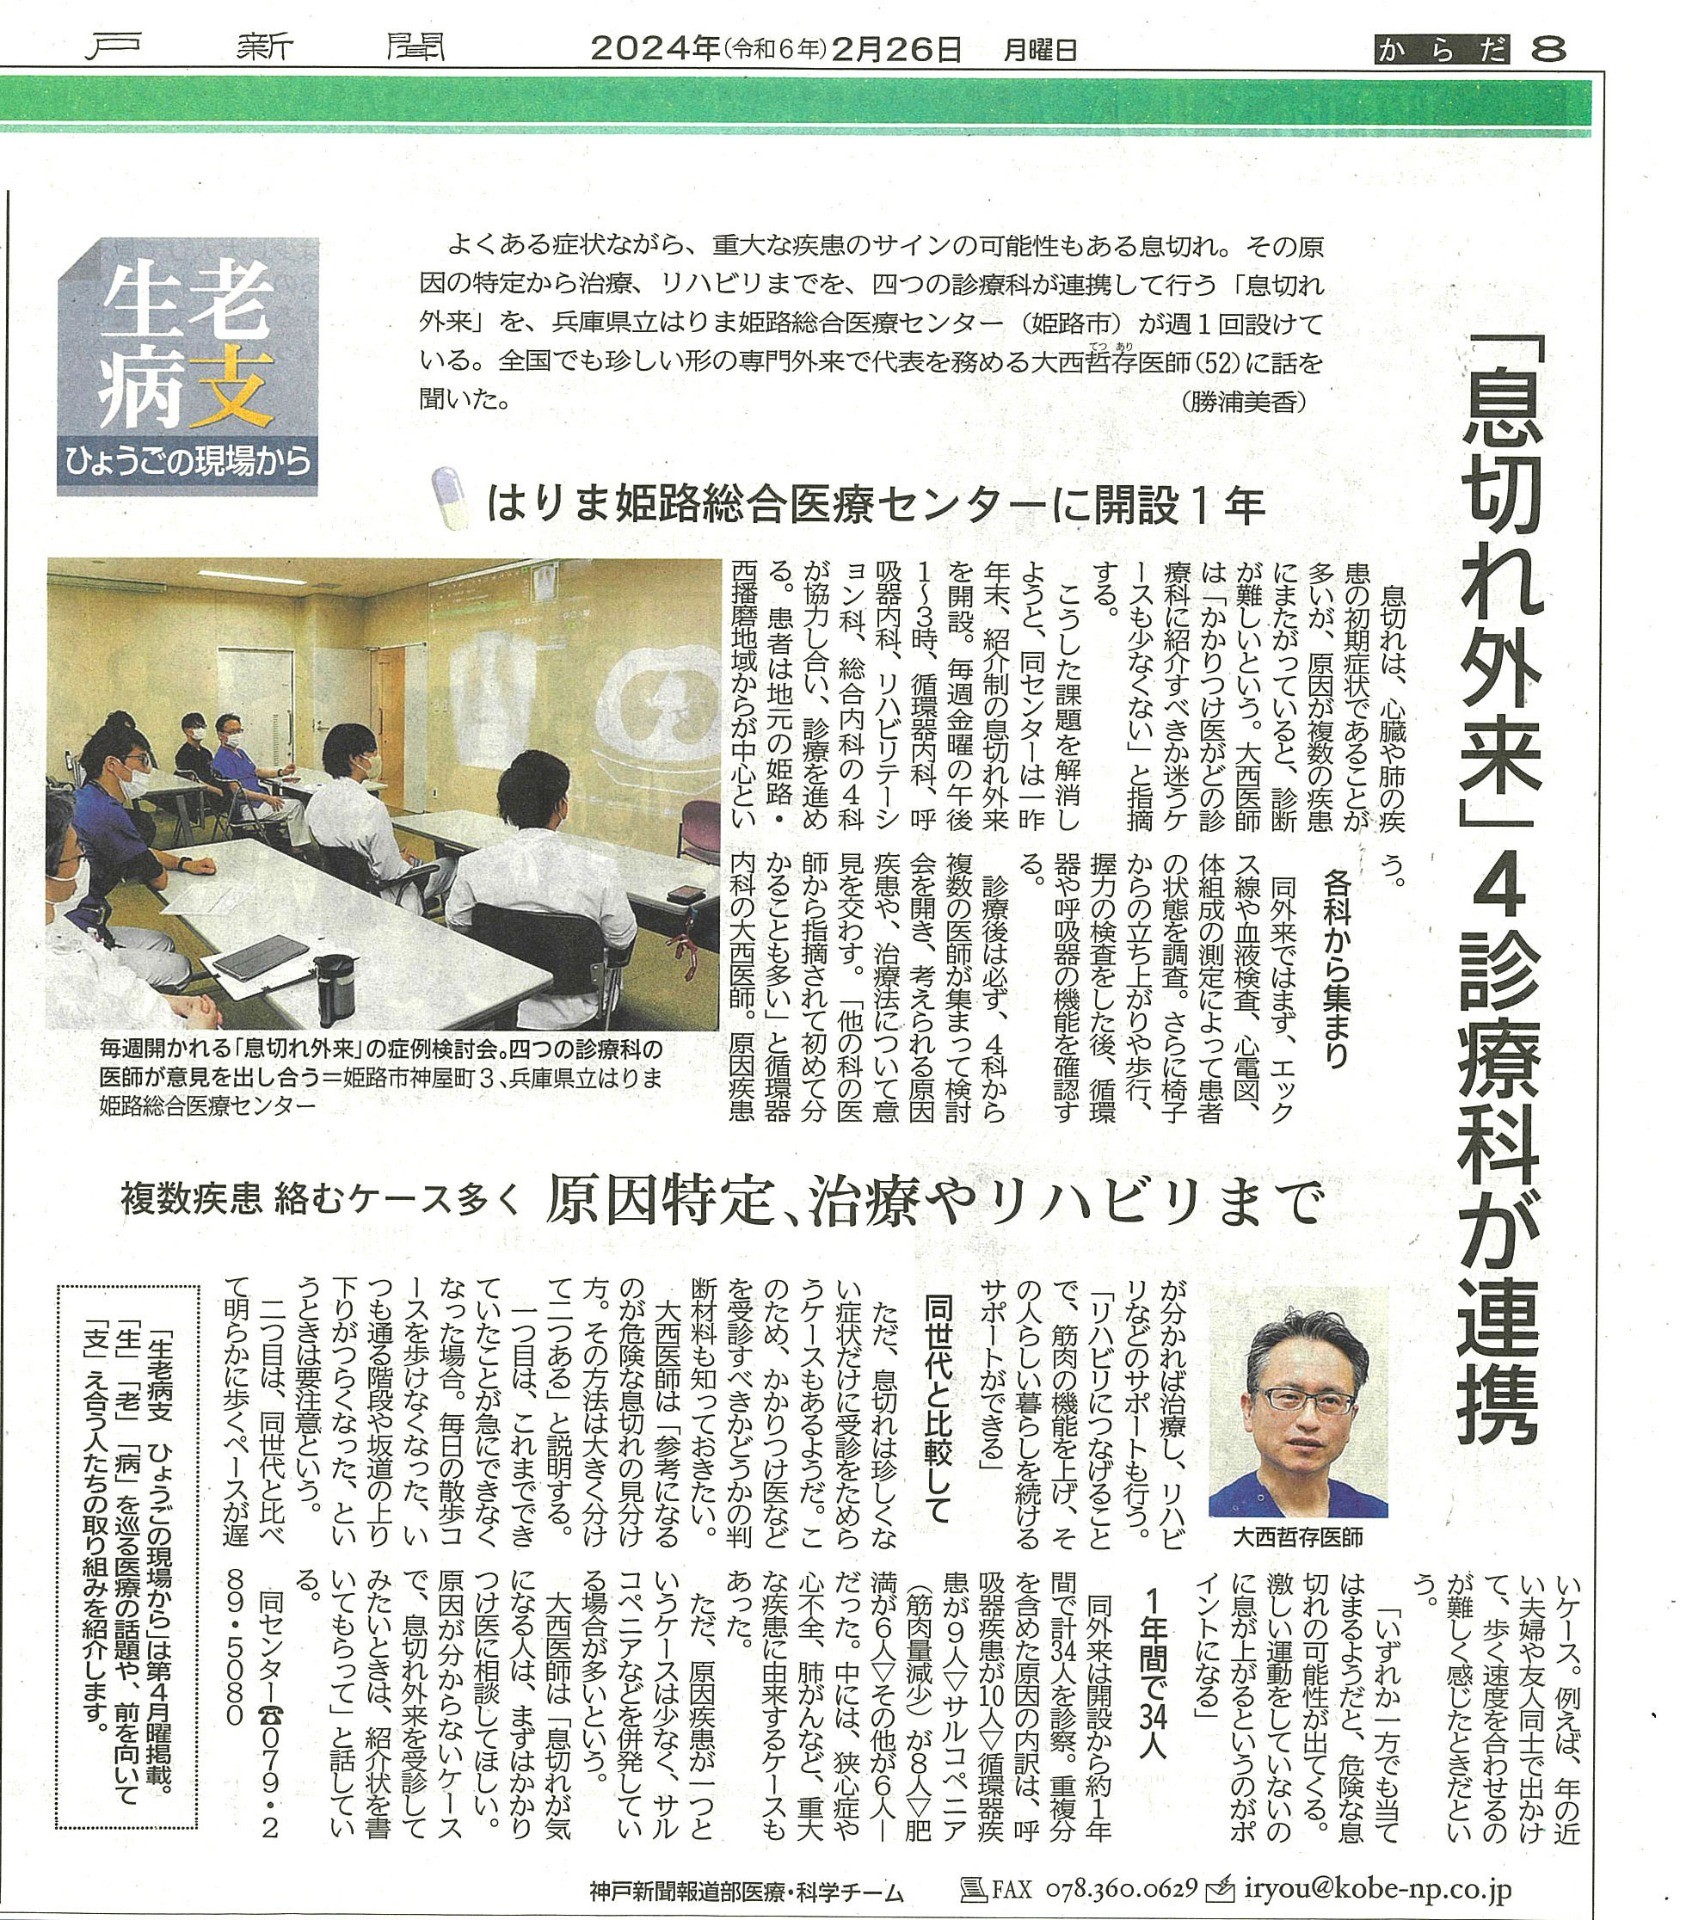 2/26 神戸新聞にて『息切れ外来』を紹介していただきました。